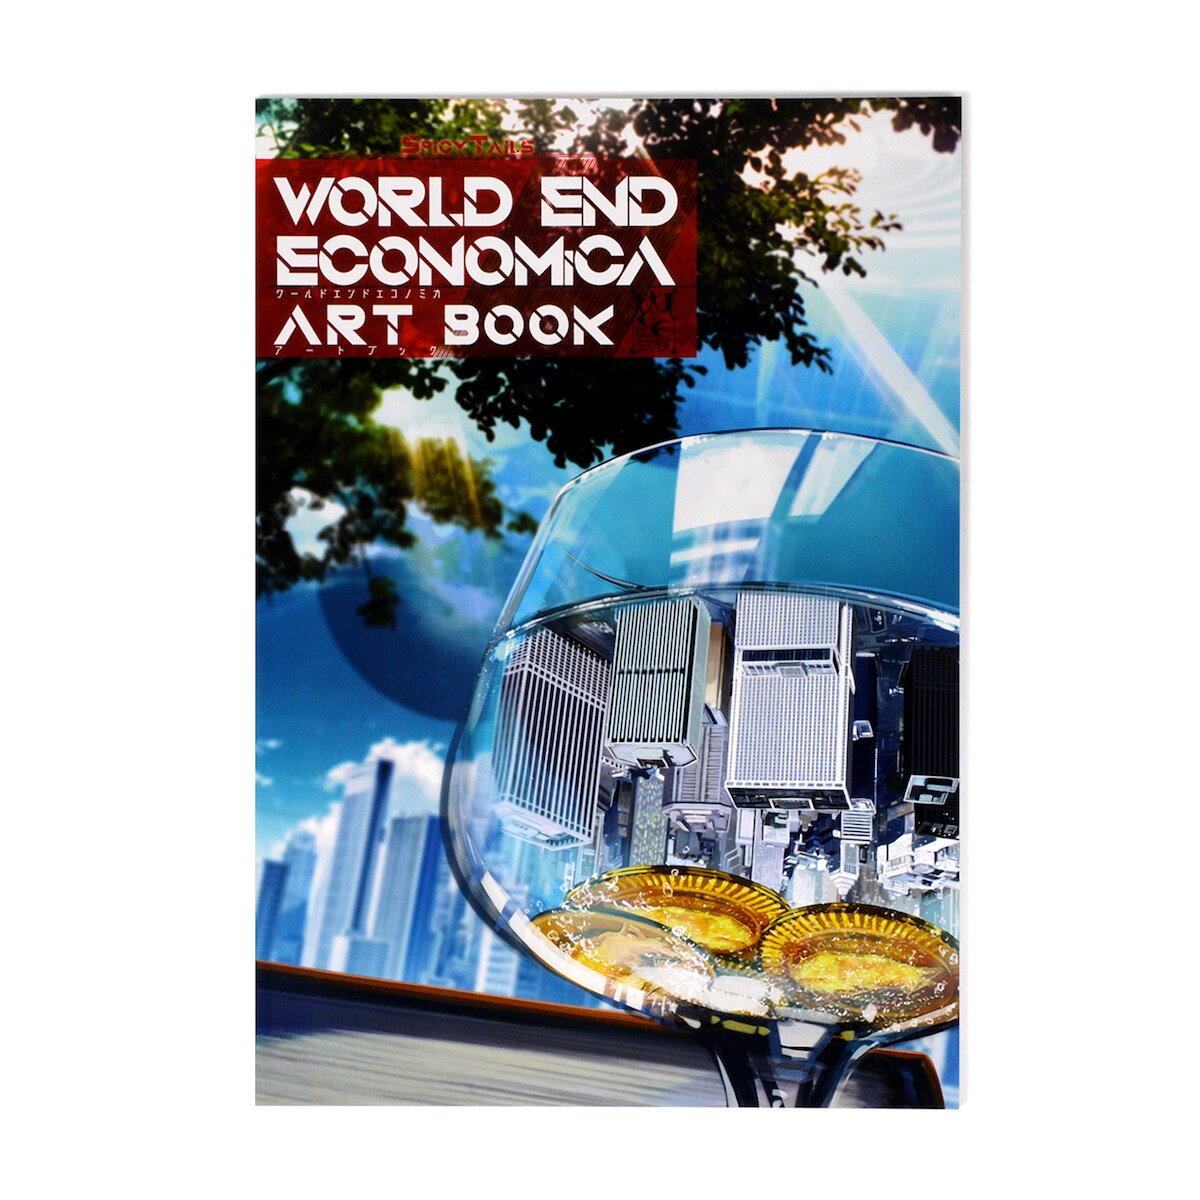 WORLD END ECONOMiCA Commentary Book - Tokyo Otaku Mode (TOM)